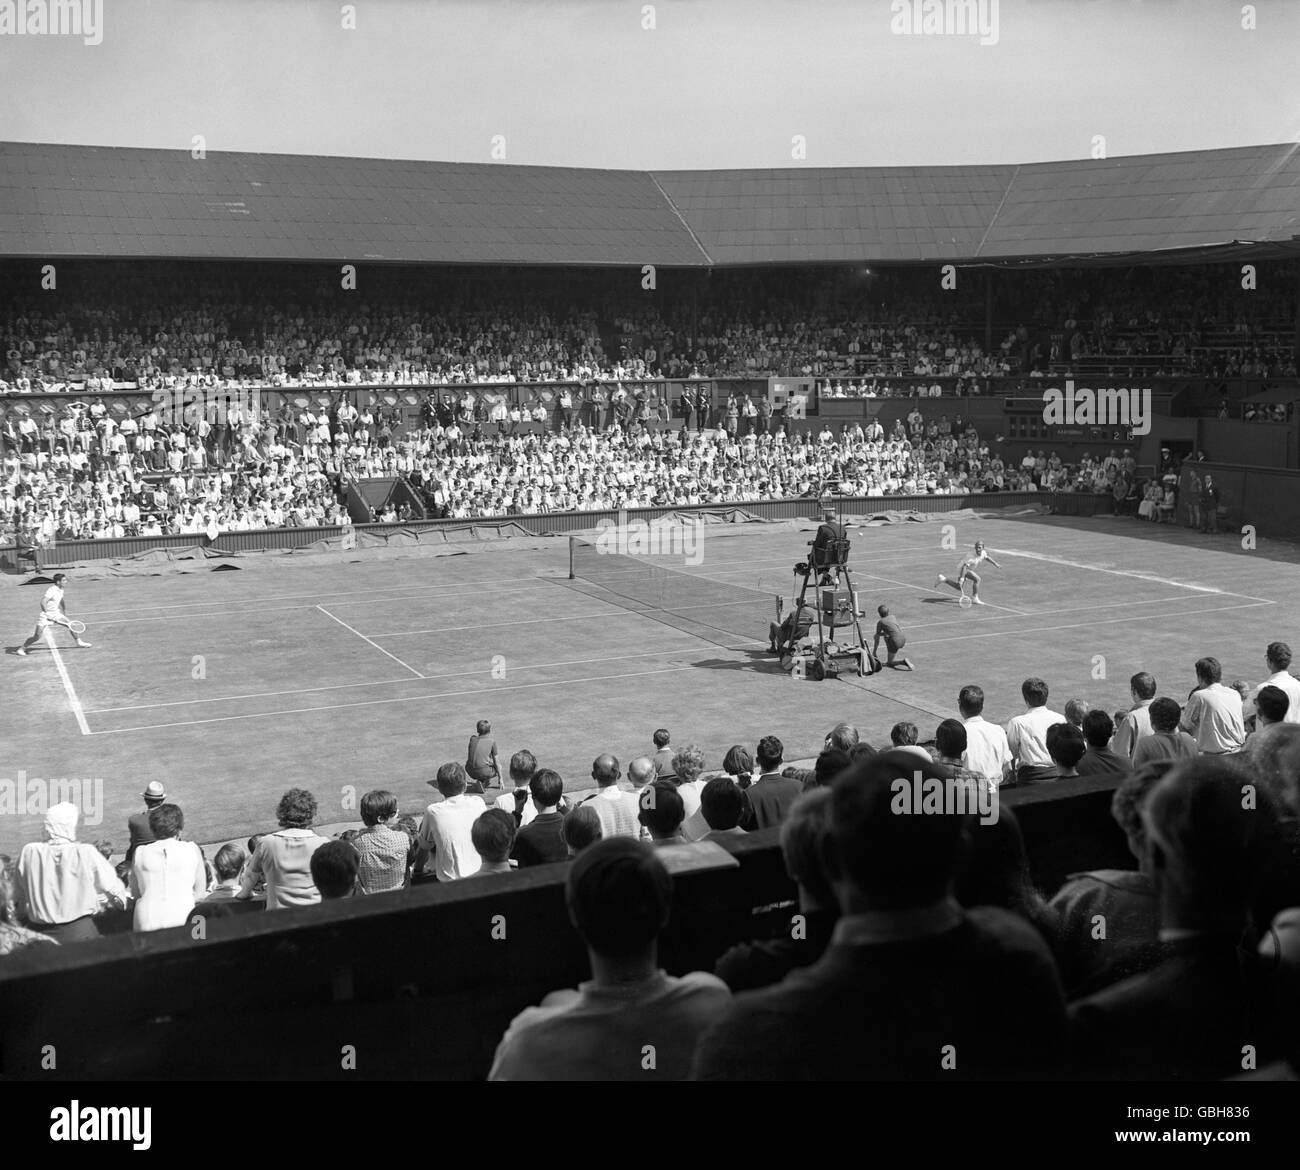 Eine allgemeine Ansicht von Ken Rosewall und Lew Hoad in ihrem Halbfinalspiel im ersten professionellen Tennisturnier in Wimbledon. Stockfoto